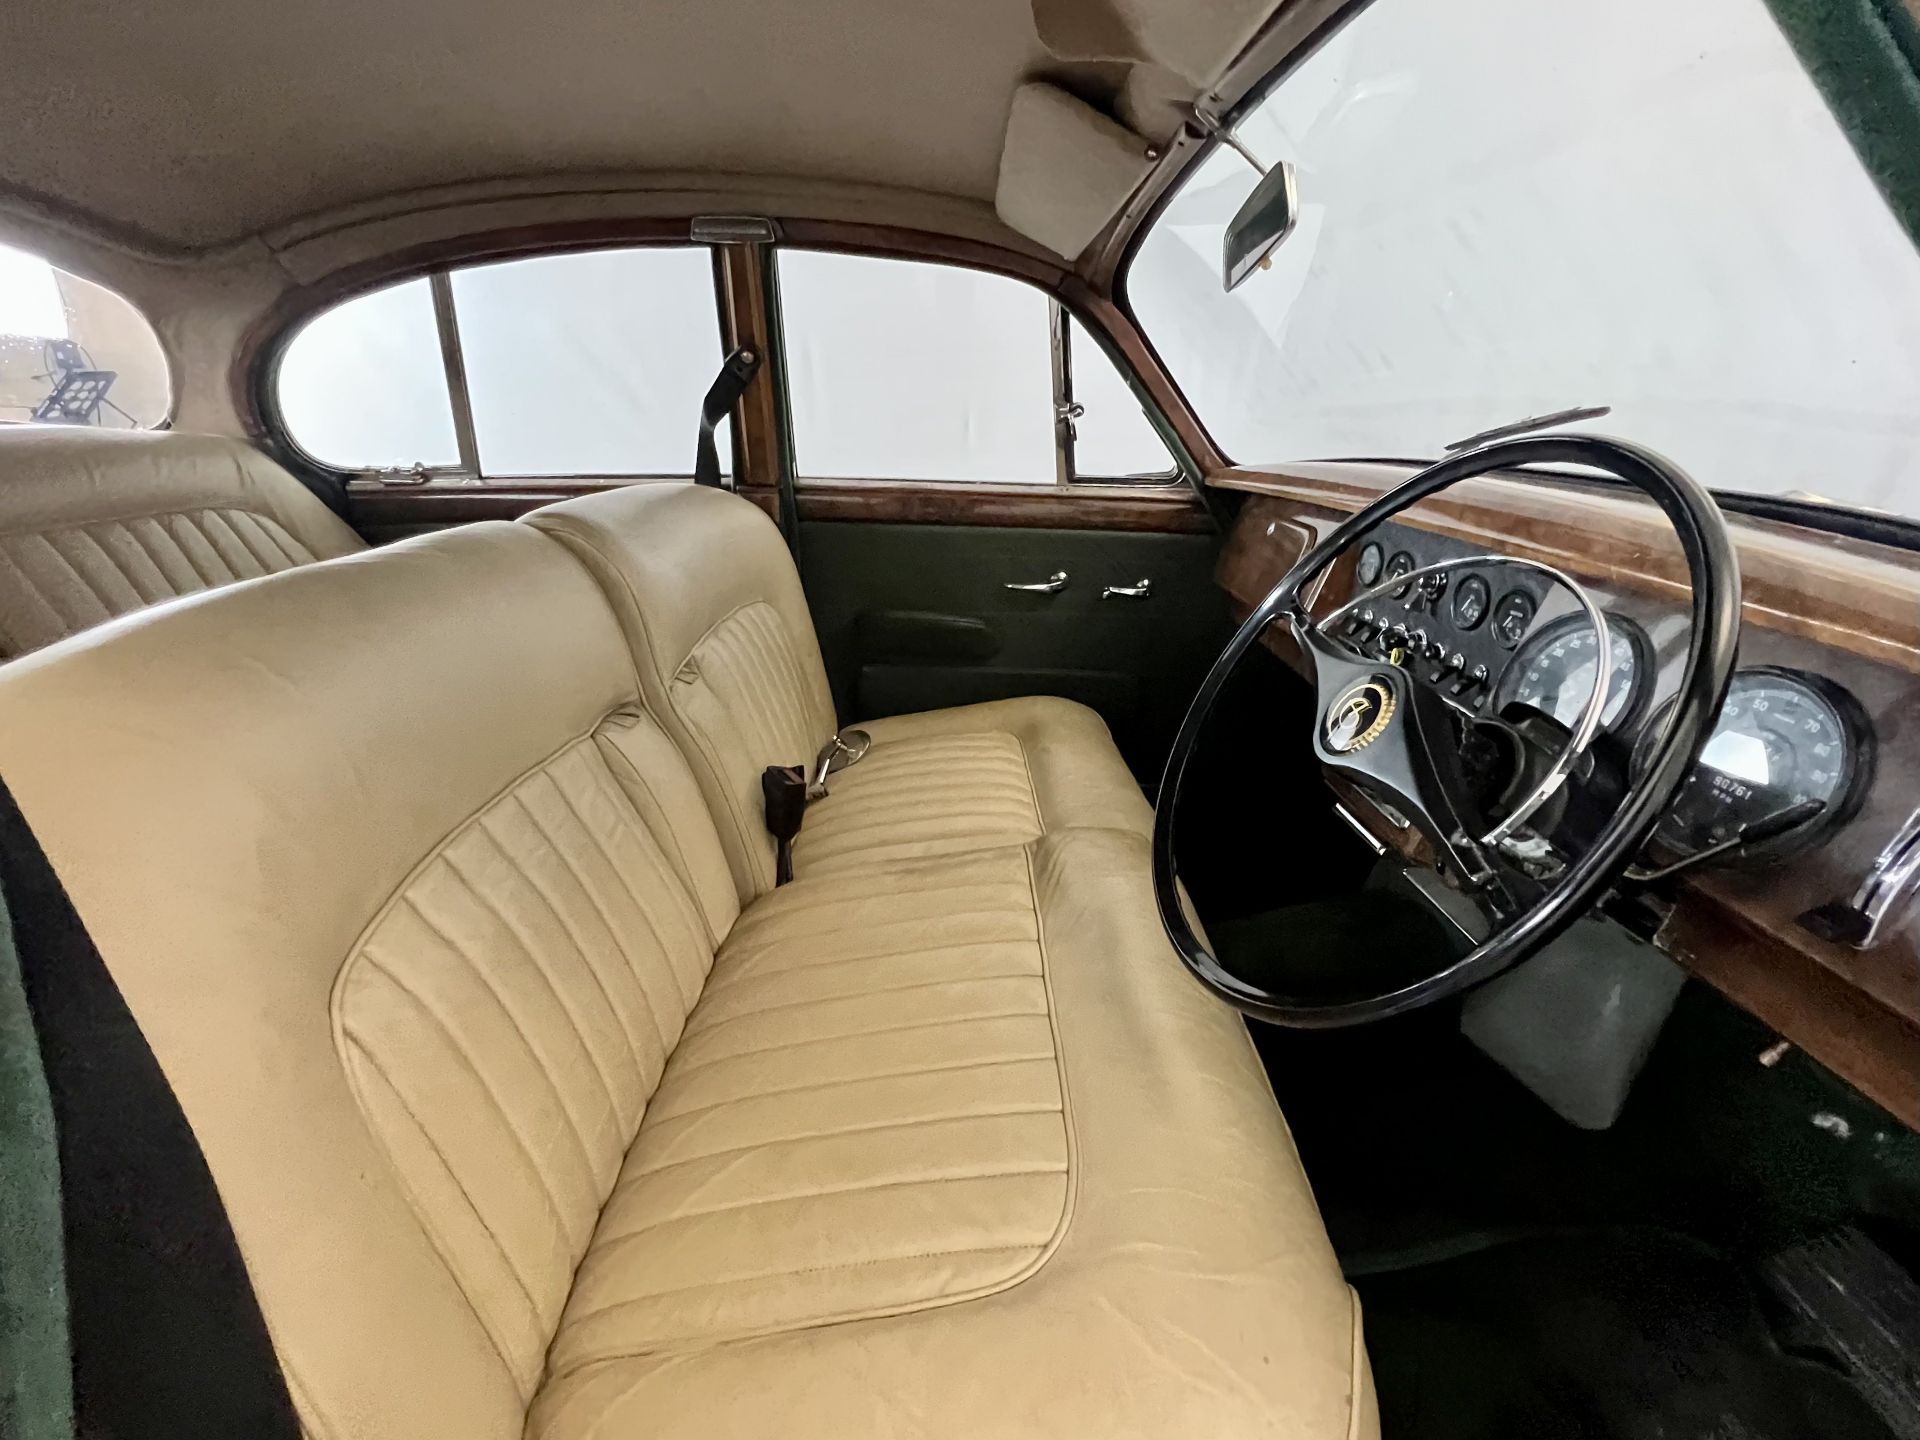 Daimler V8 - Image 18 of 31